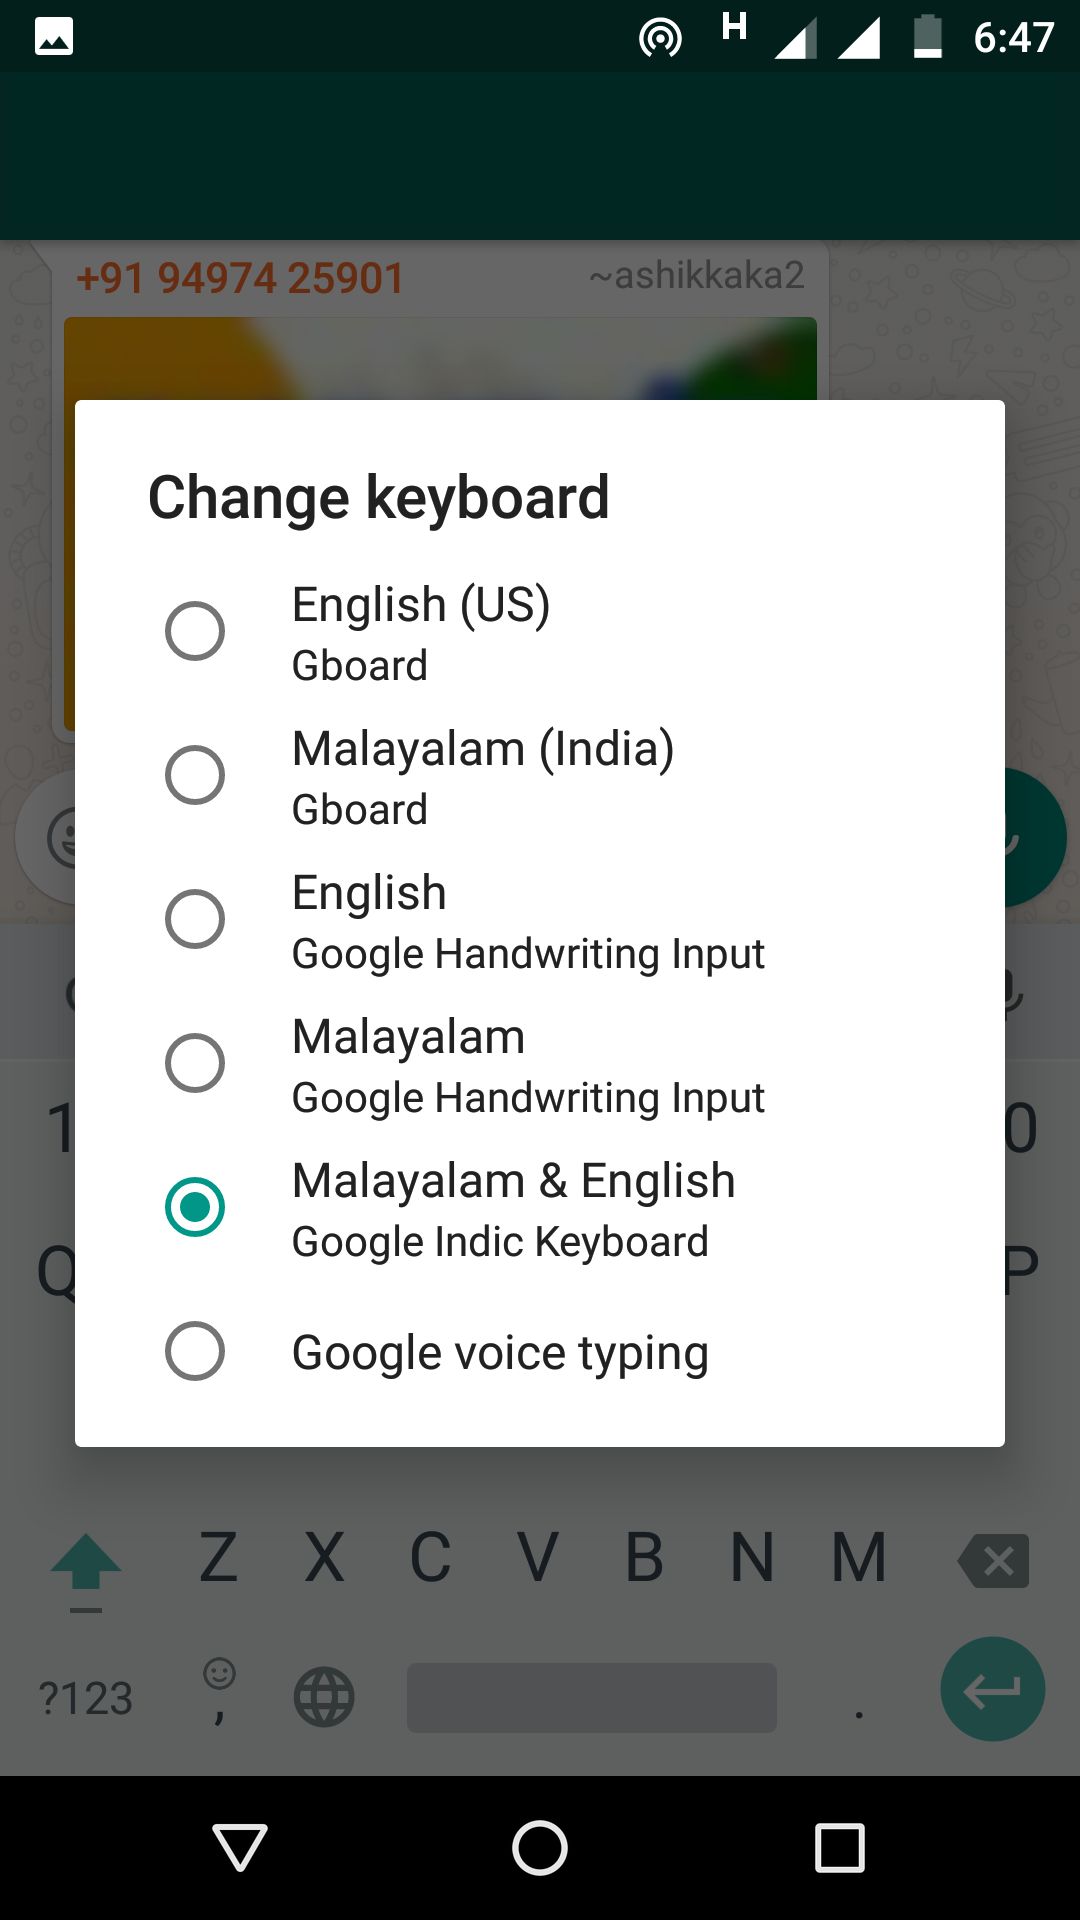 google malayalam typing tool download